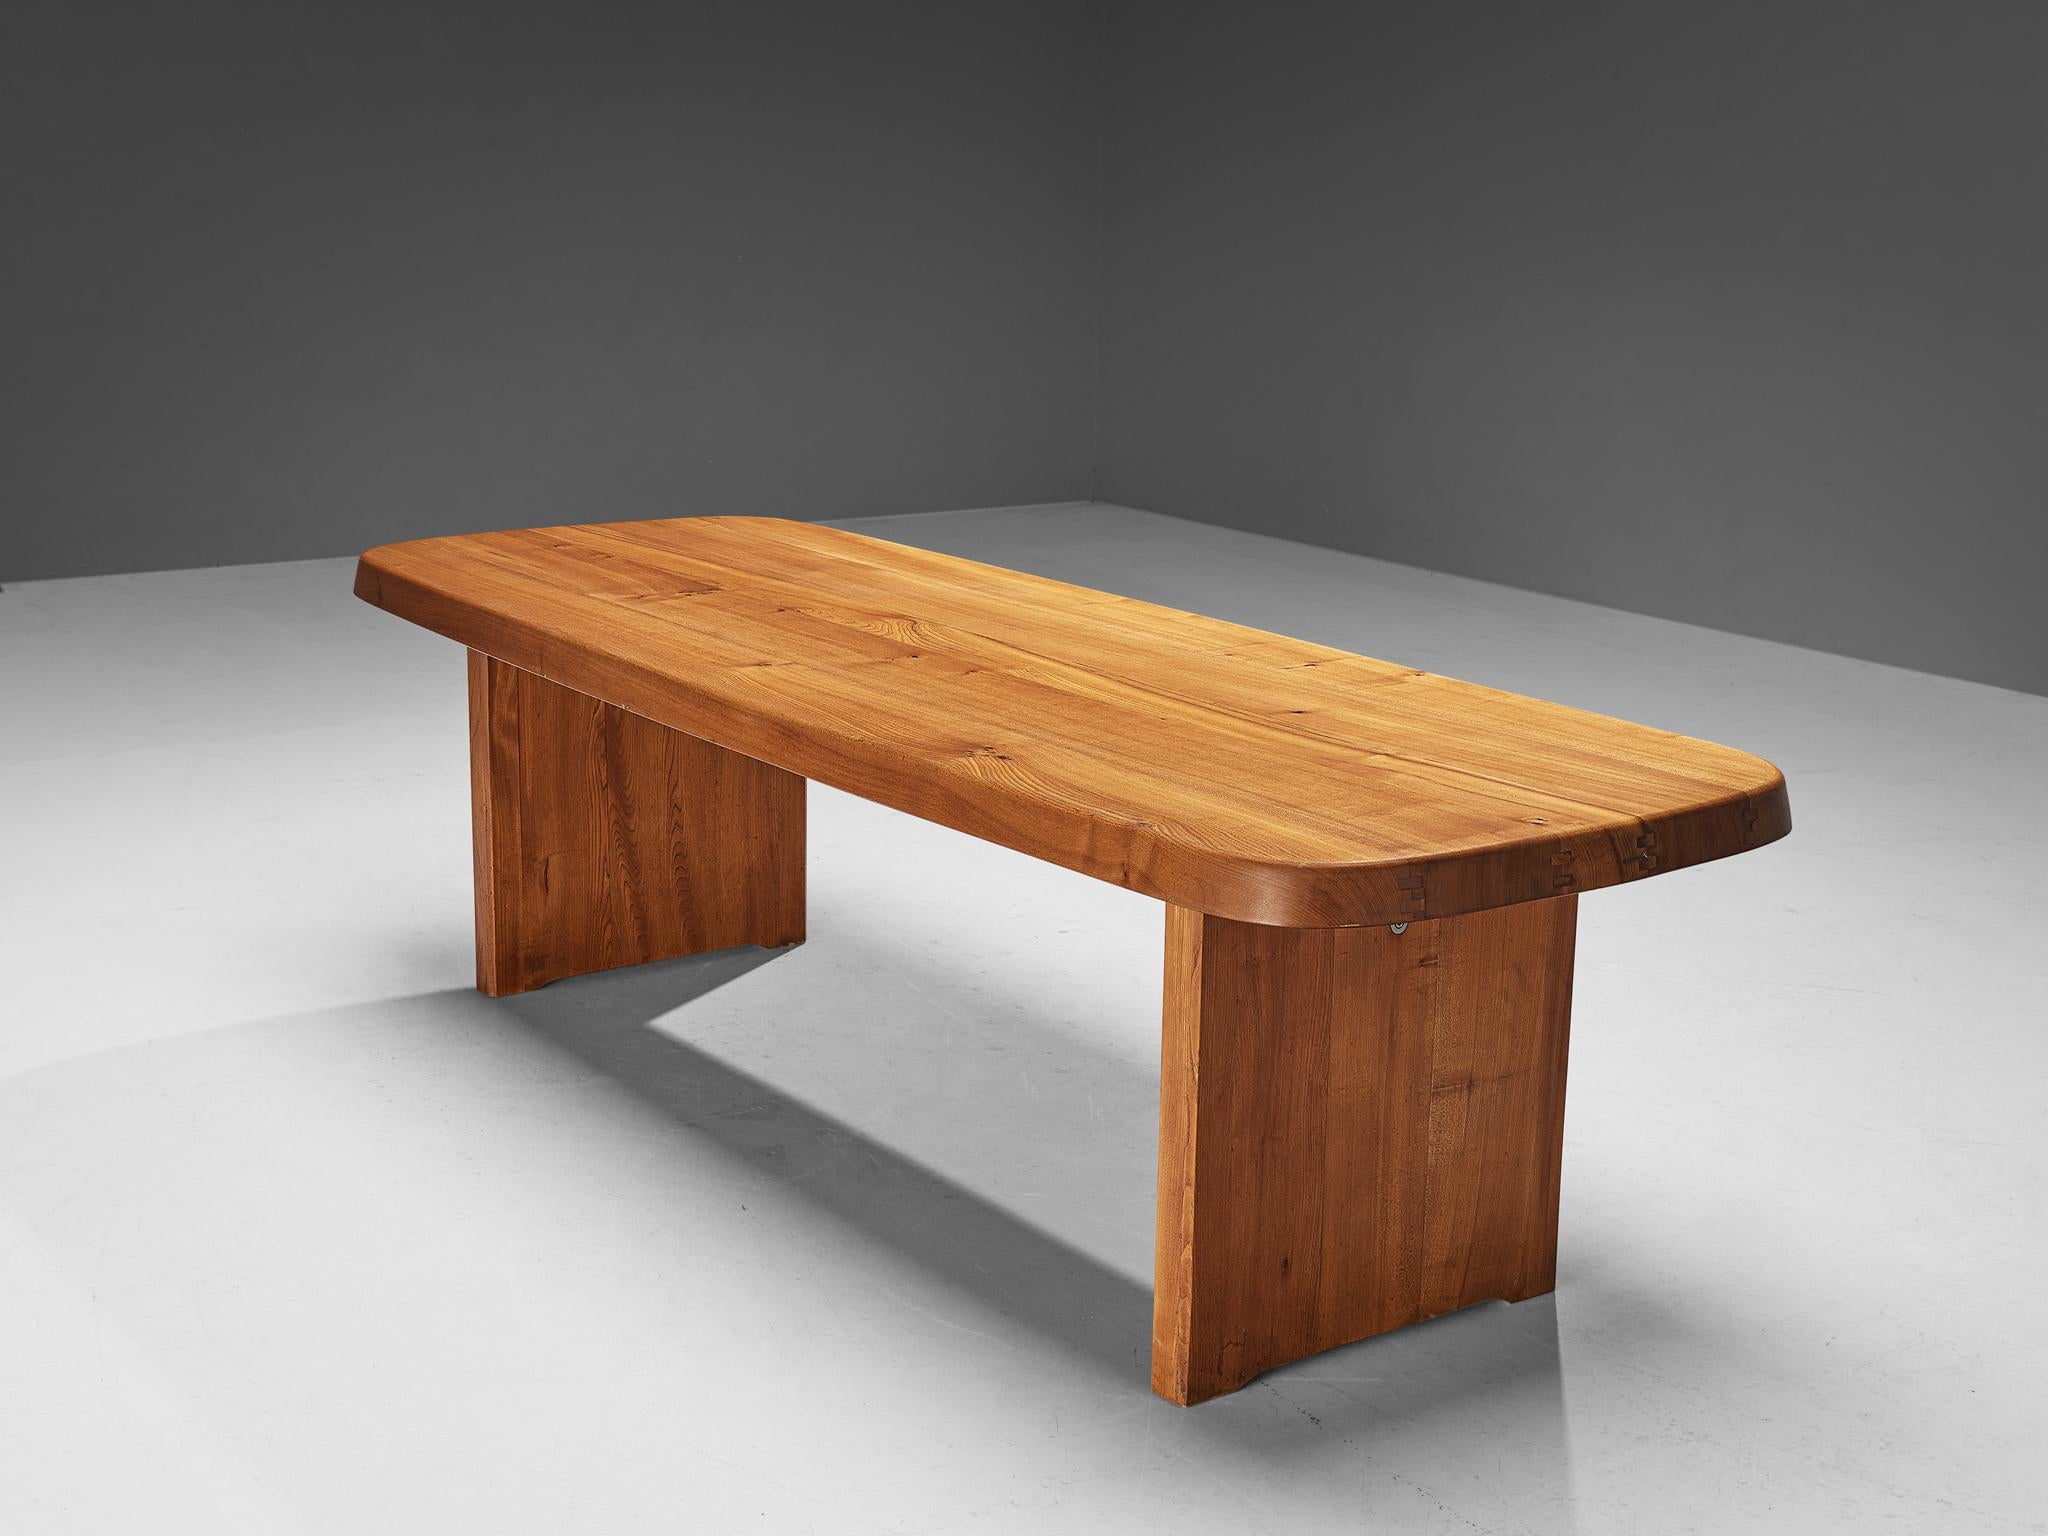 Pierre Chapo, table de salle à manger, modèle T20A, bois d'orme, France, 1972

Cette table T20A est l'une des premières éditions conçues par Pierre Chapo, connu pour son utilisation caractéristique du bois d'orme massif et pour son engagement en